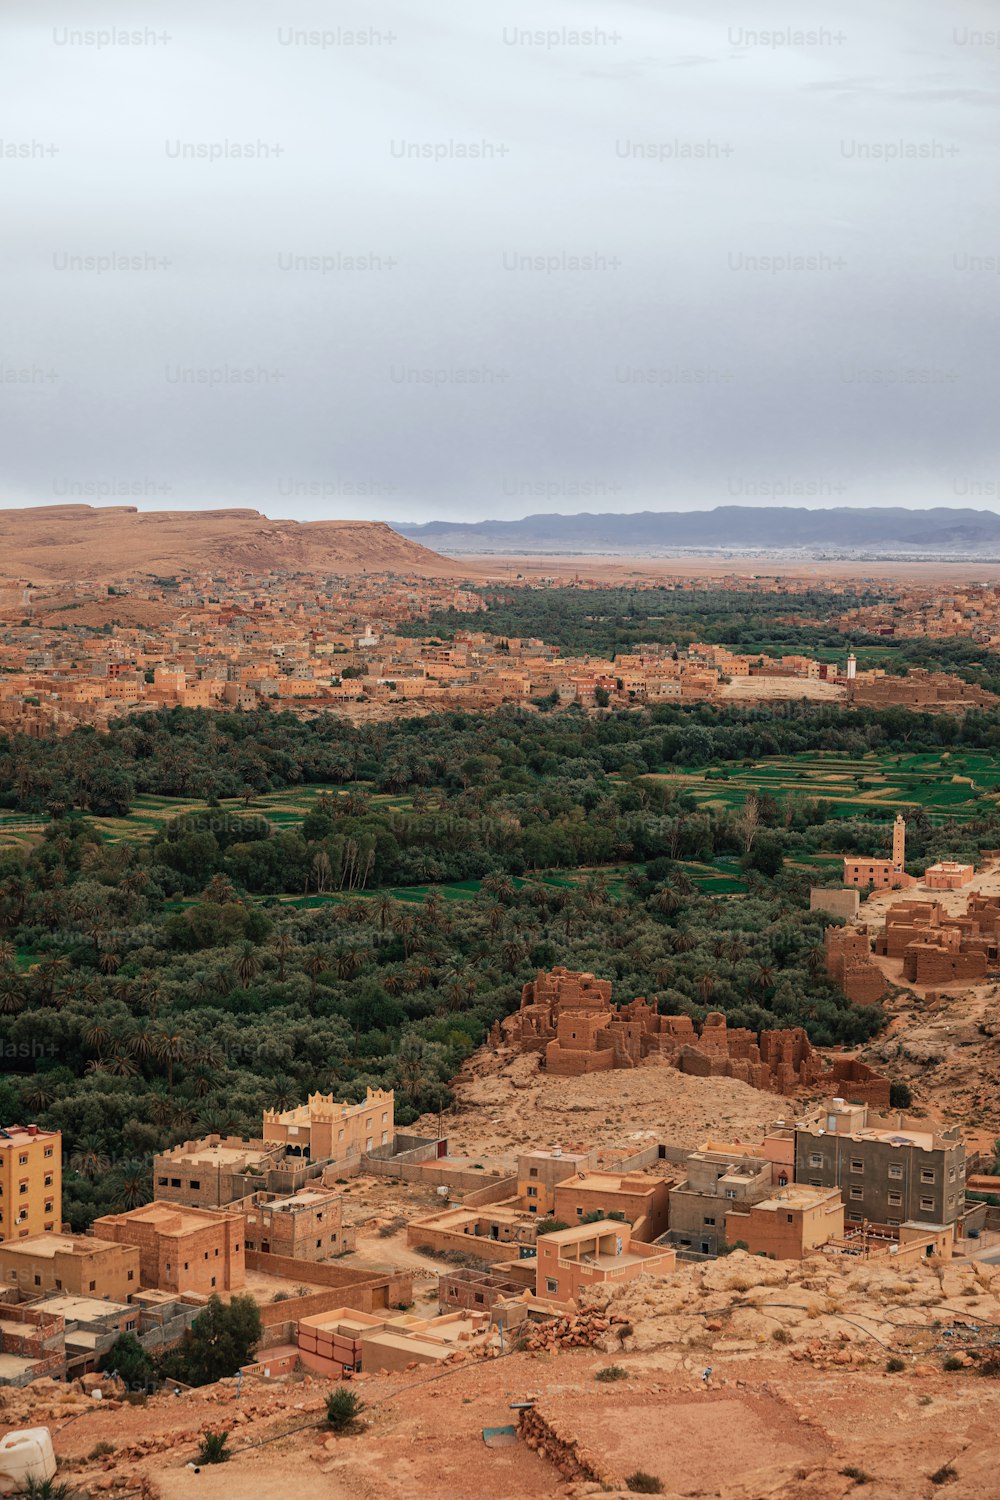 Una vista de un pequeño pueblo en medio de un desierto